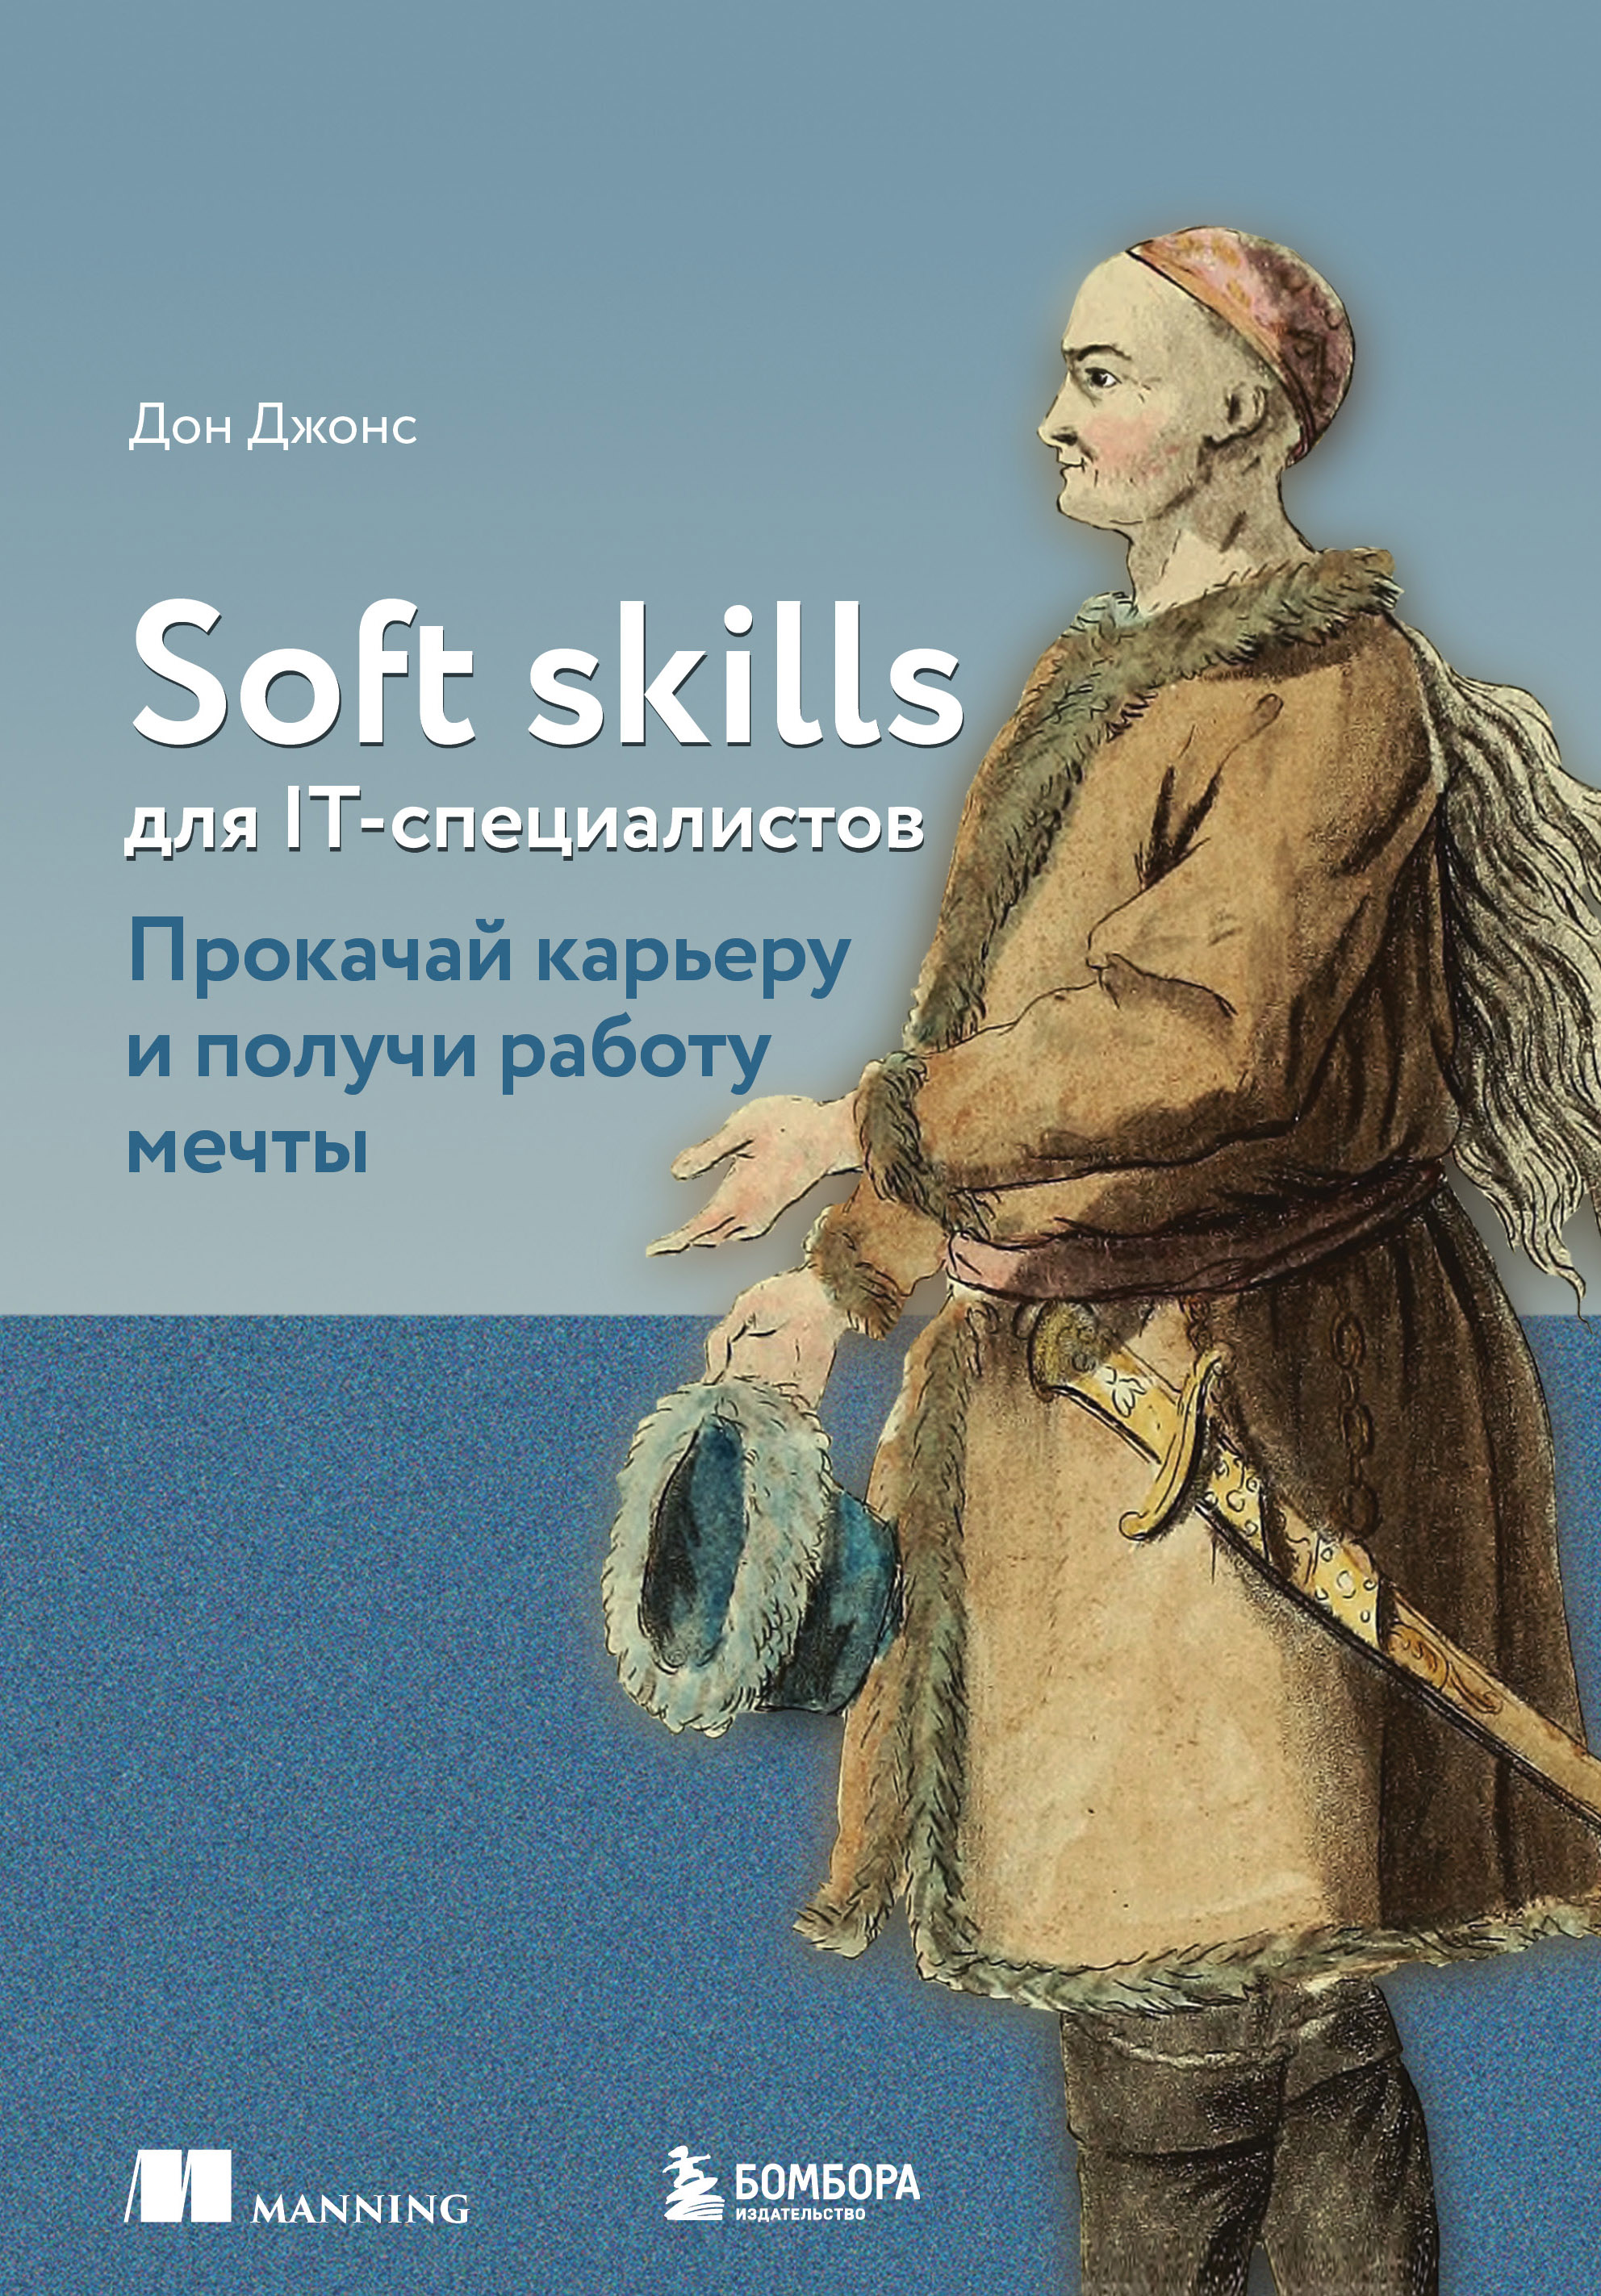  . Soft skills  IT-.       